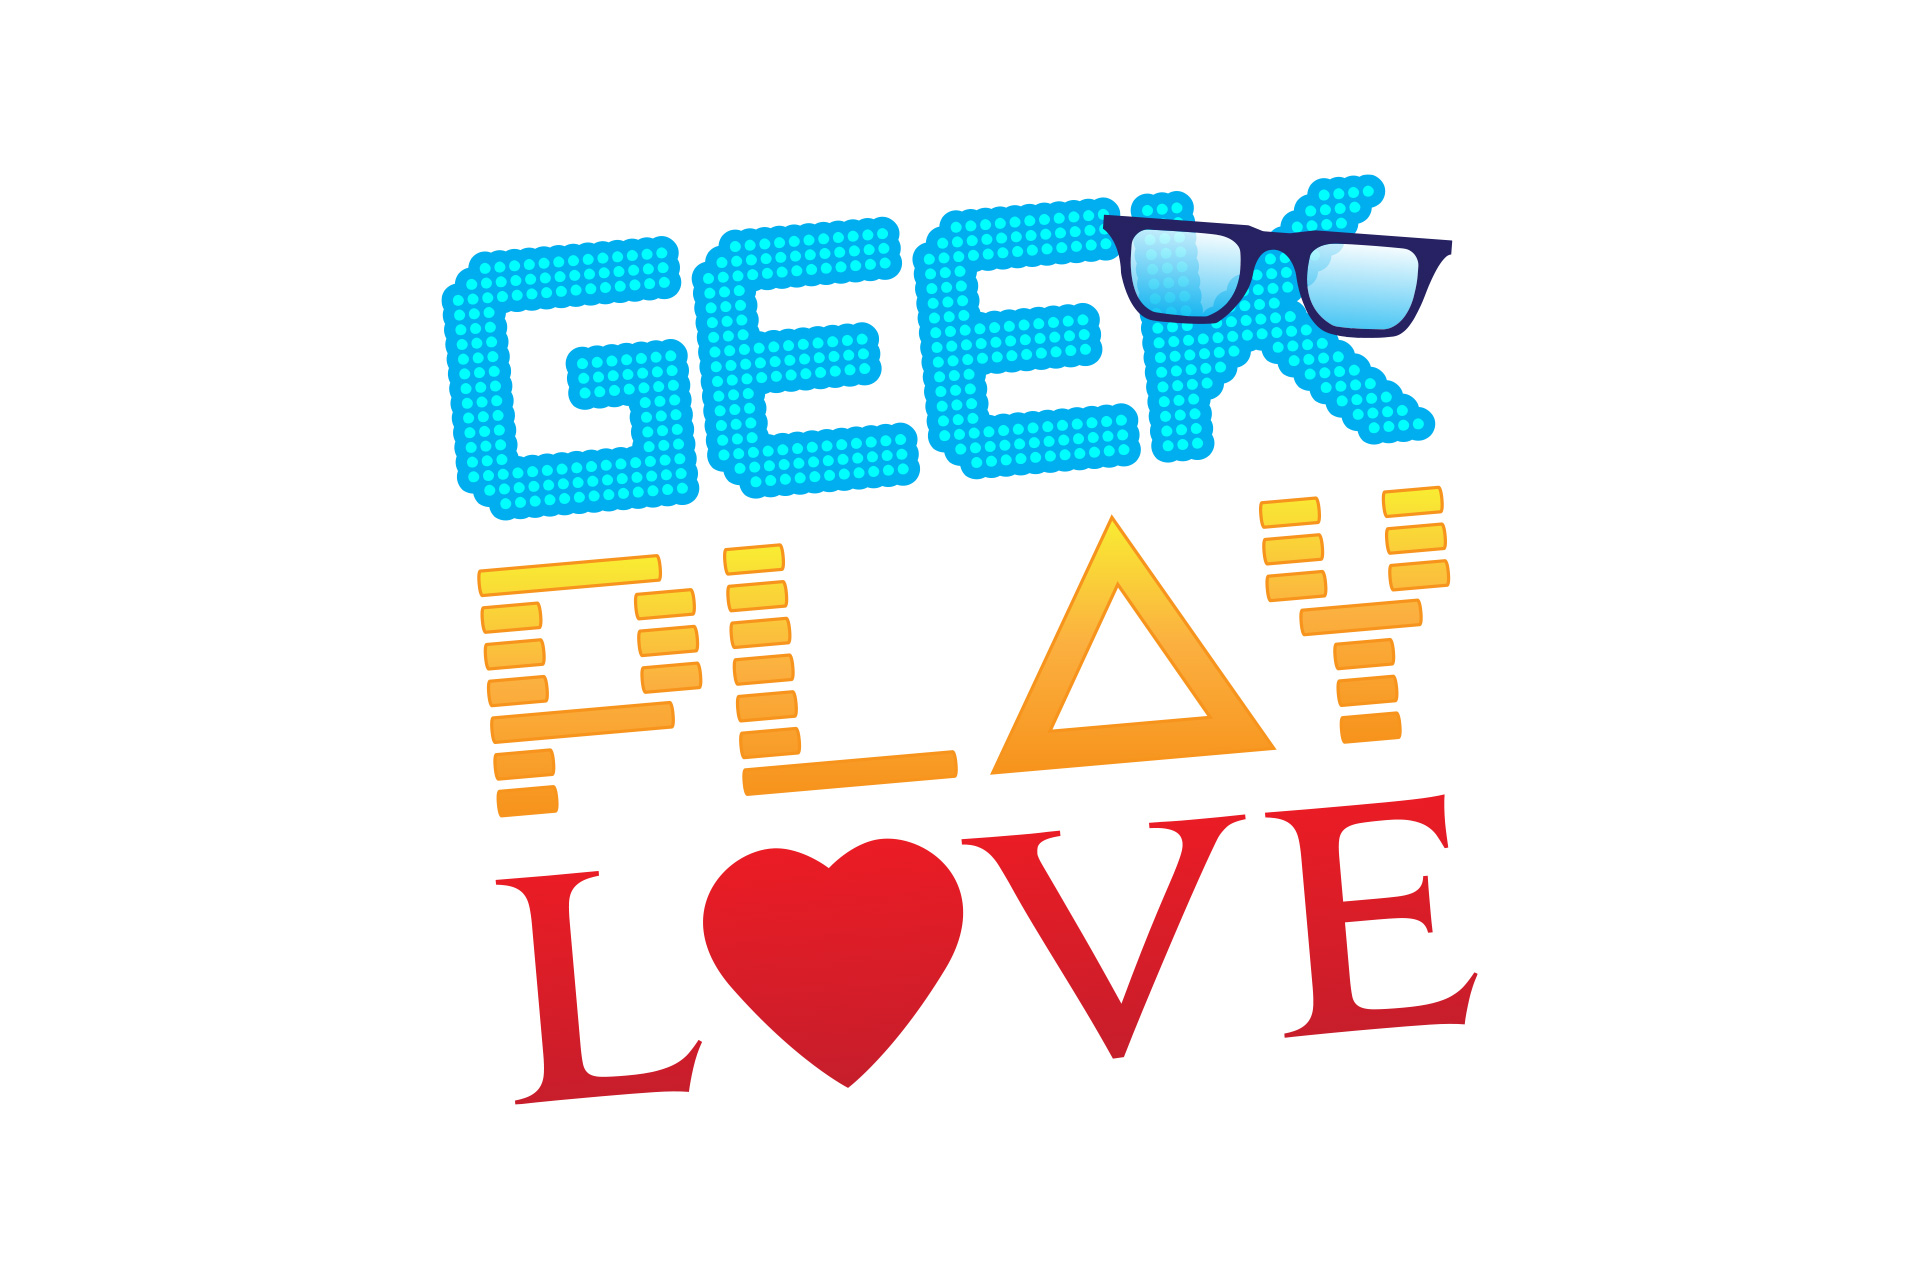 Geek Play Love